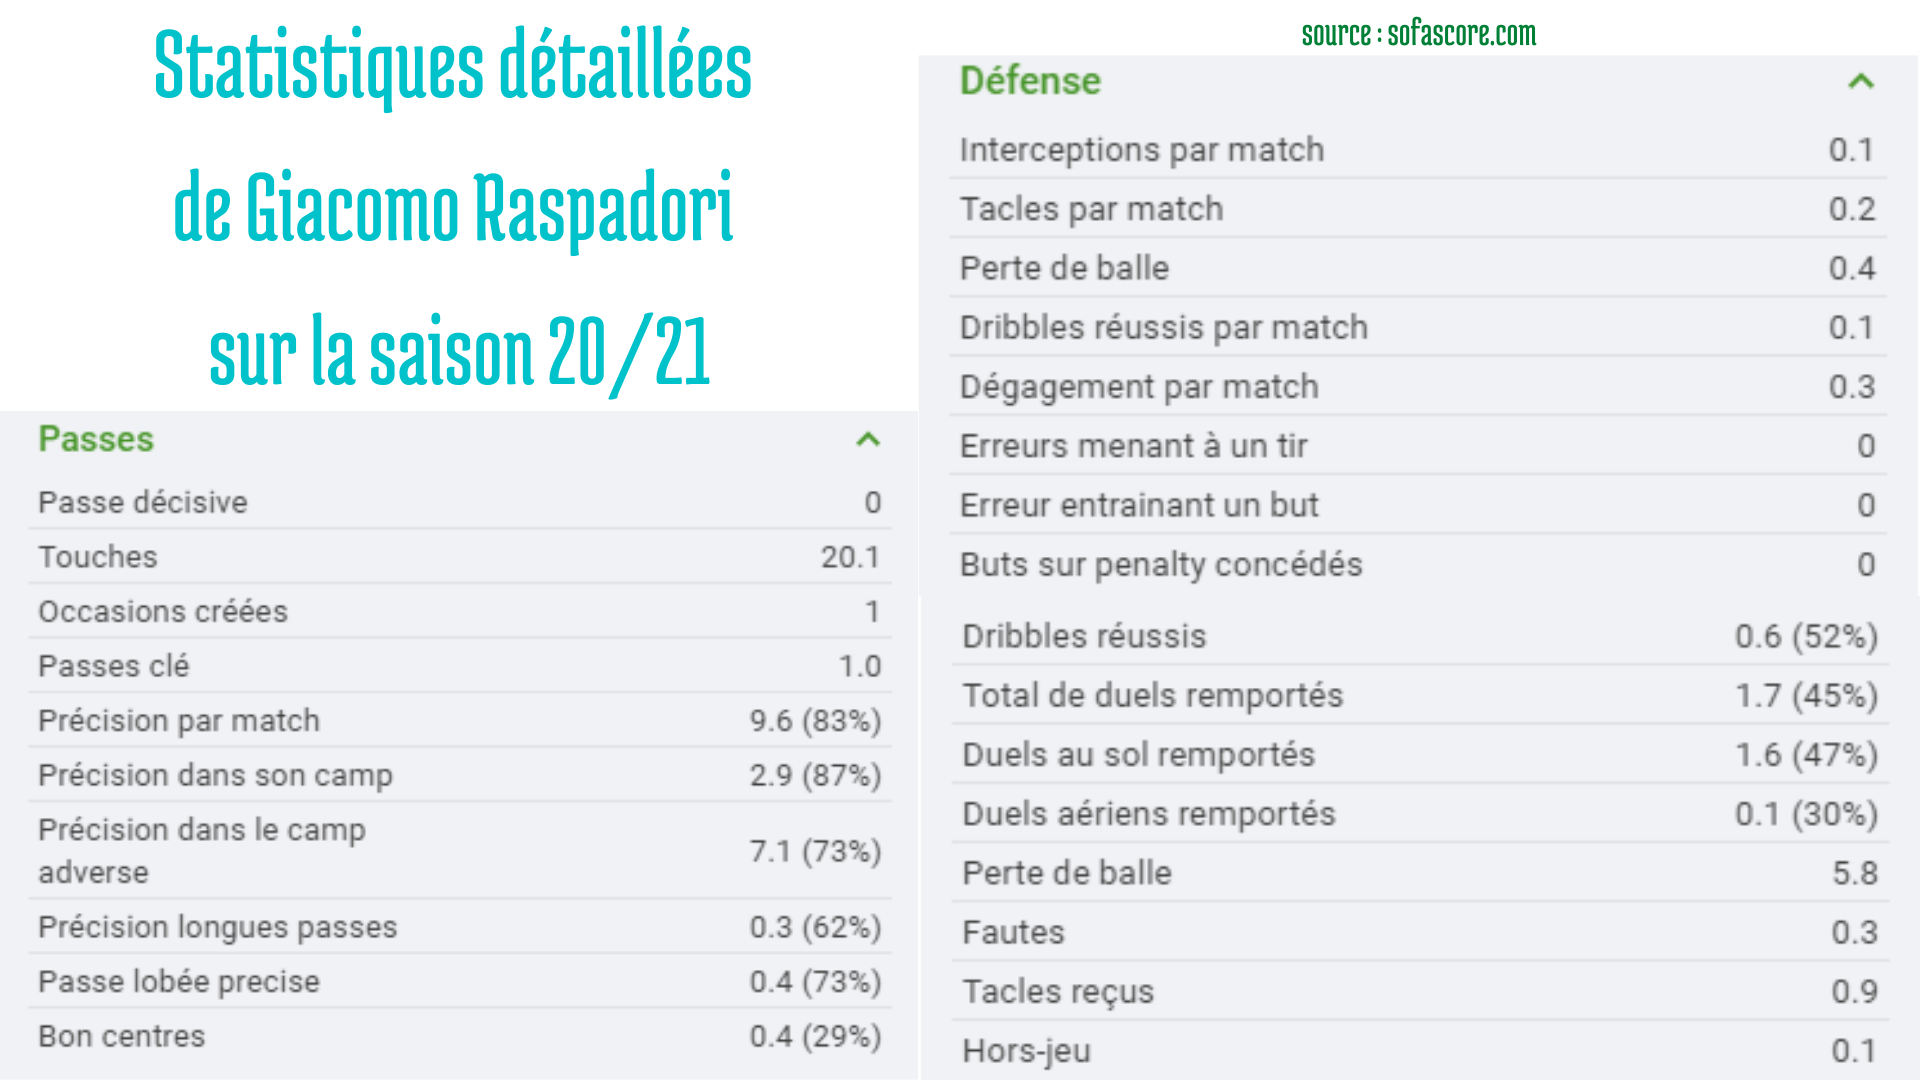 Statistiques détaillées de Giacomo Raspadori sur la saison en cours. Source : sofascore.fr